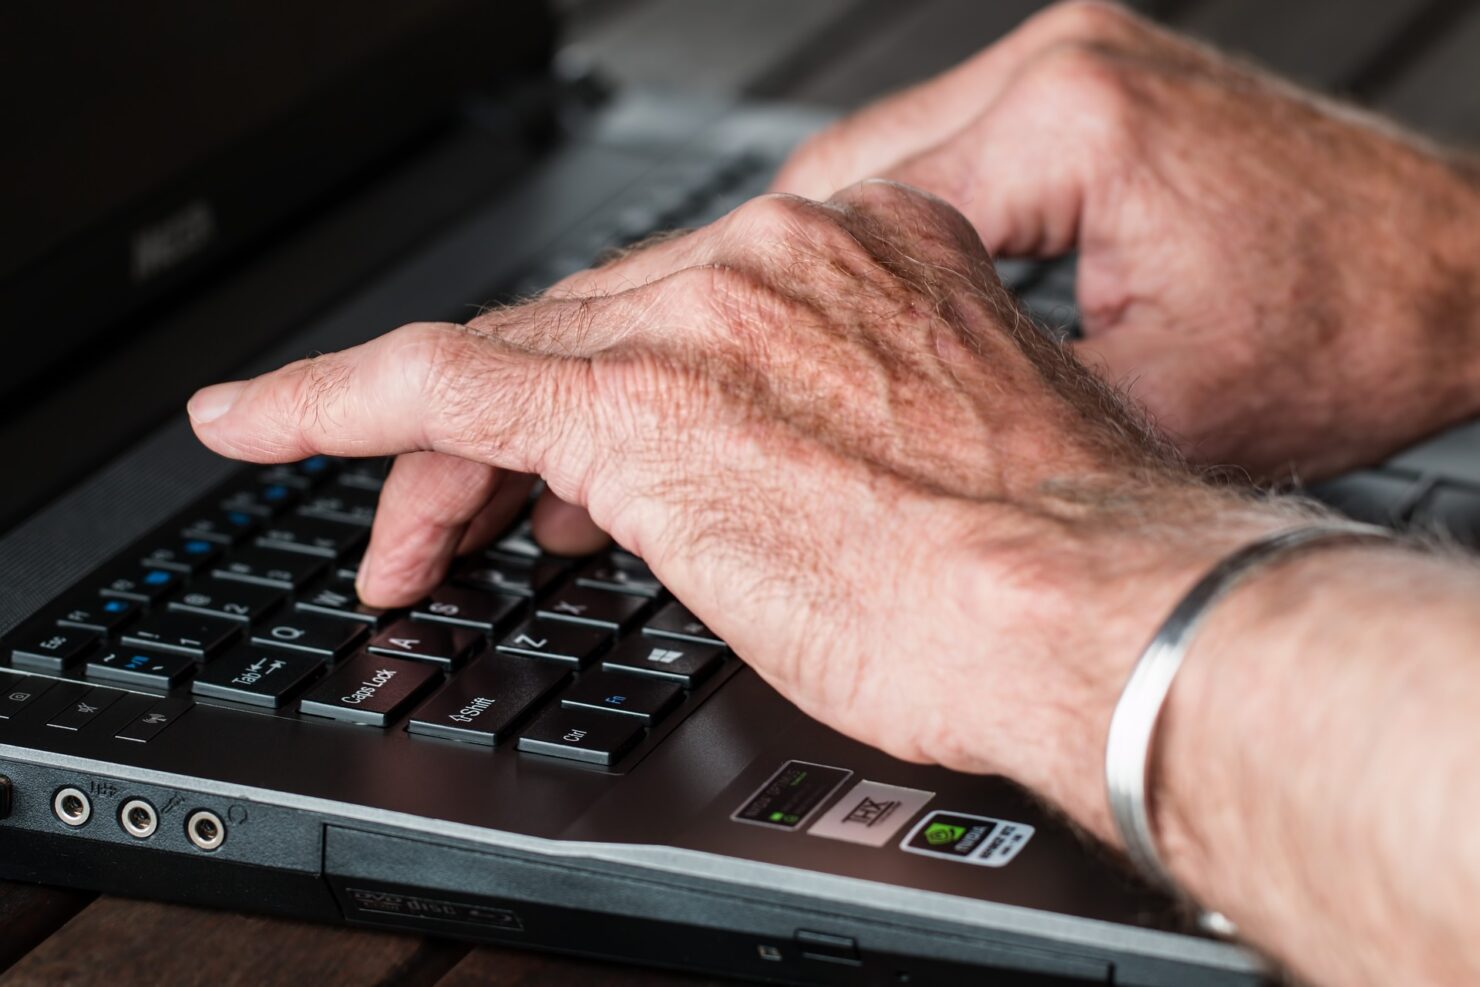 Protegendo os idosos de fraudes financeiras: O problema do Phishing e como combatê-lo